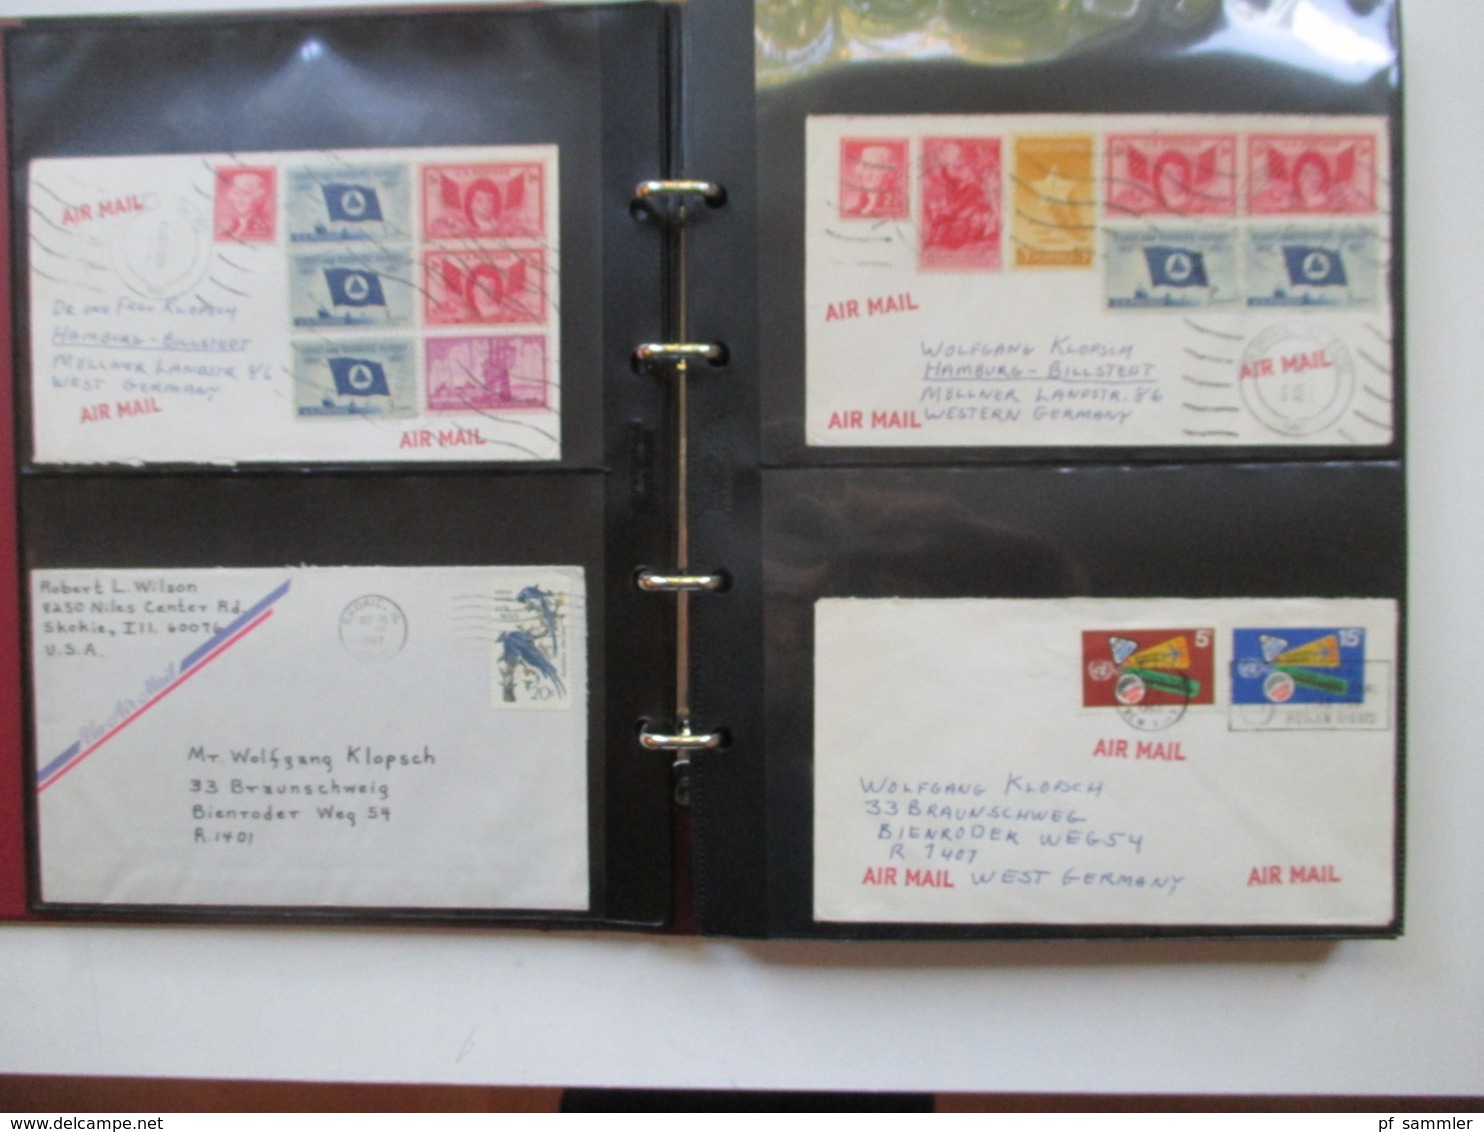 USA Belege Sammlung Ab 1947 - 80er Jahre 249 Stk In 4 Alben! FDC / Flugpost / First Flight / Ganzsachen / Sonderbelege - Sammlungen (im Alben)